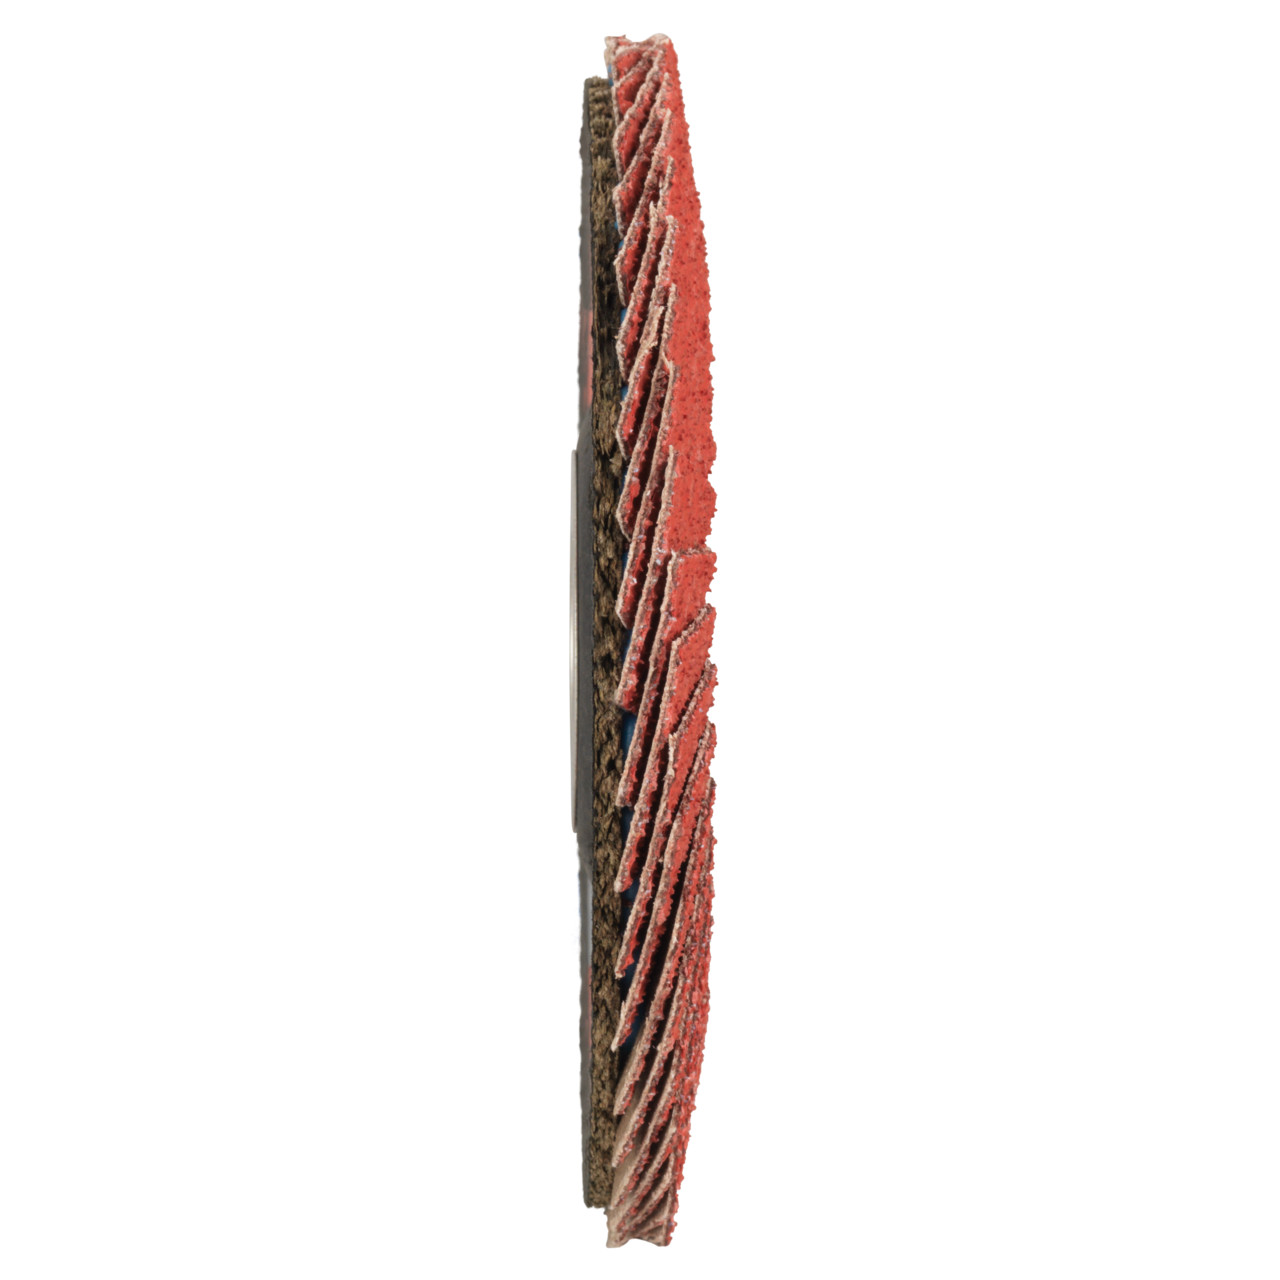 Tyrolit Rondelle éventail DxH 125x22,23 CERAMIC pour acier inoxydable, P80, forme : 28A - modèle droit (modèle à corps en fibre de verre), art. 34166688